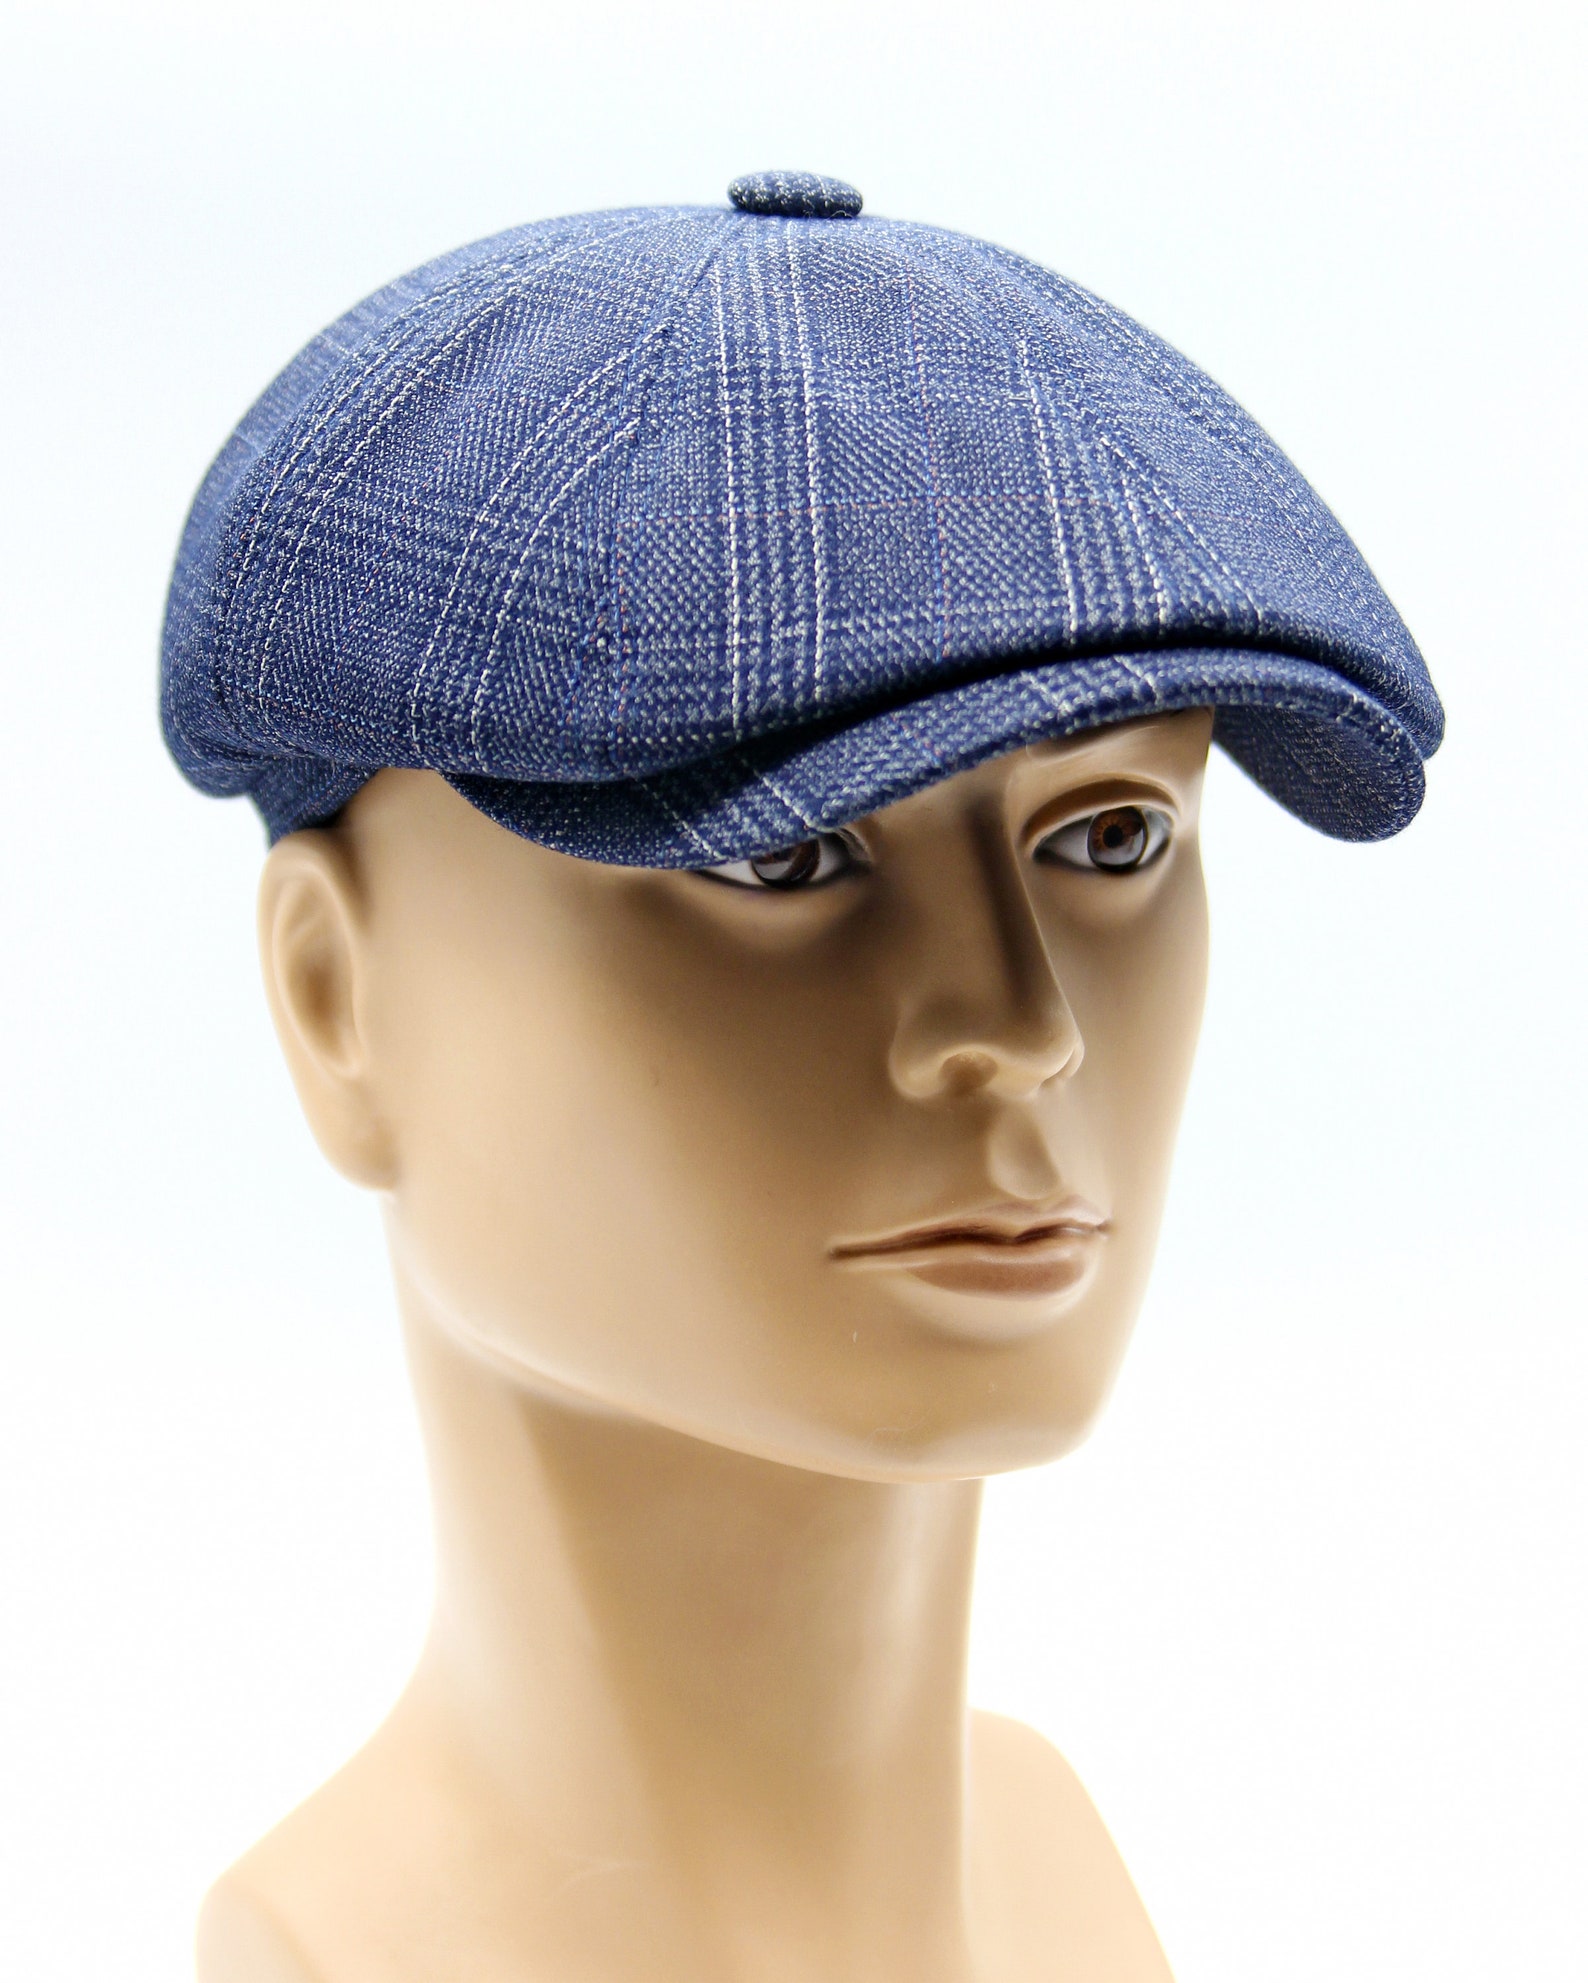 Men's flat bakers boy hat newsboy cap blue. | Etsy